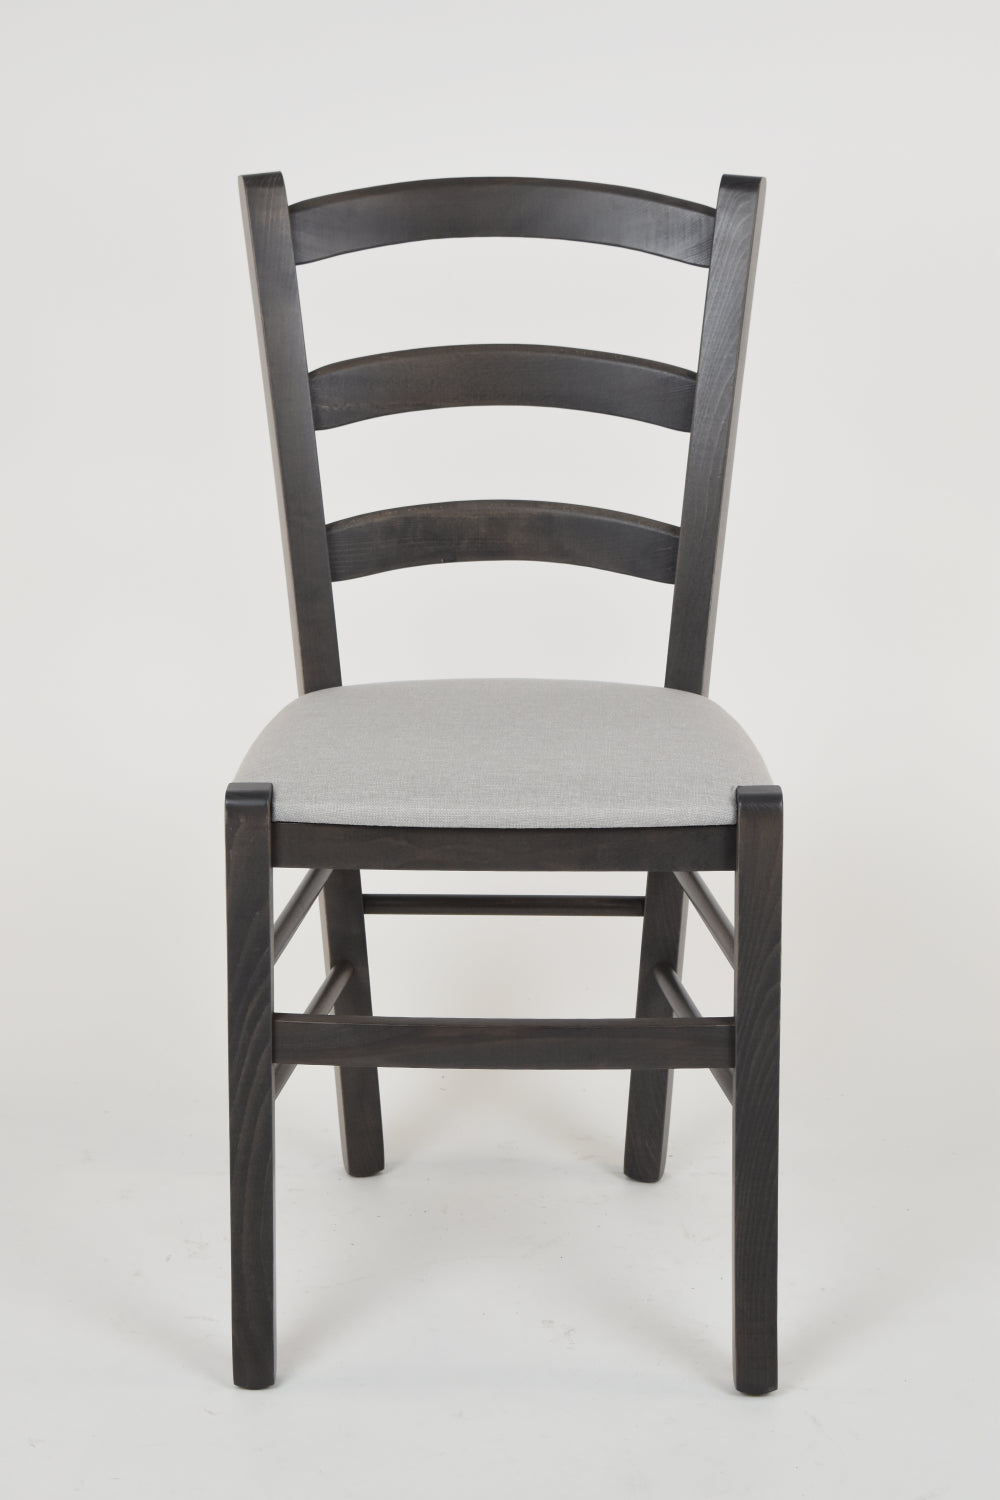 Tommychairs - Set 2 sillas de Cocina y Comedor Venice, Estructura en Madera de Haya anilina Gris Oscuro y Asiento tapizado en Tejido Gris Perla